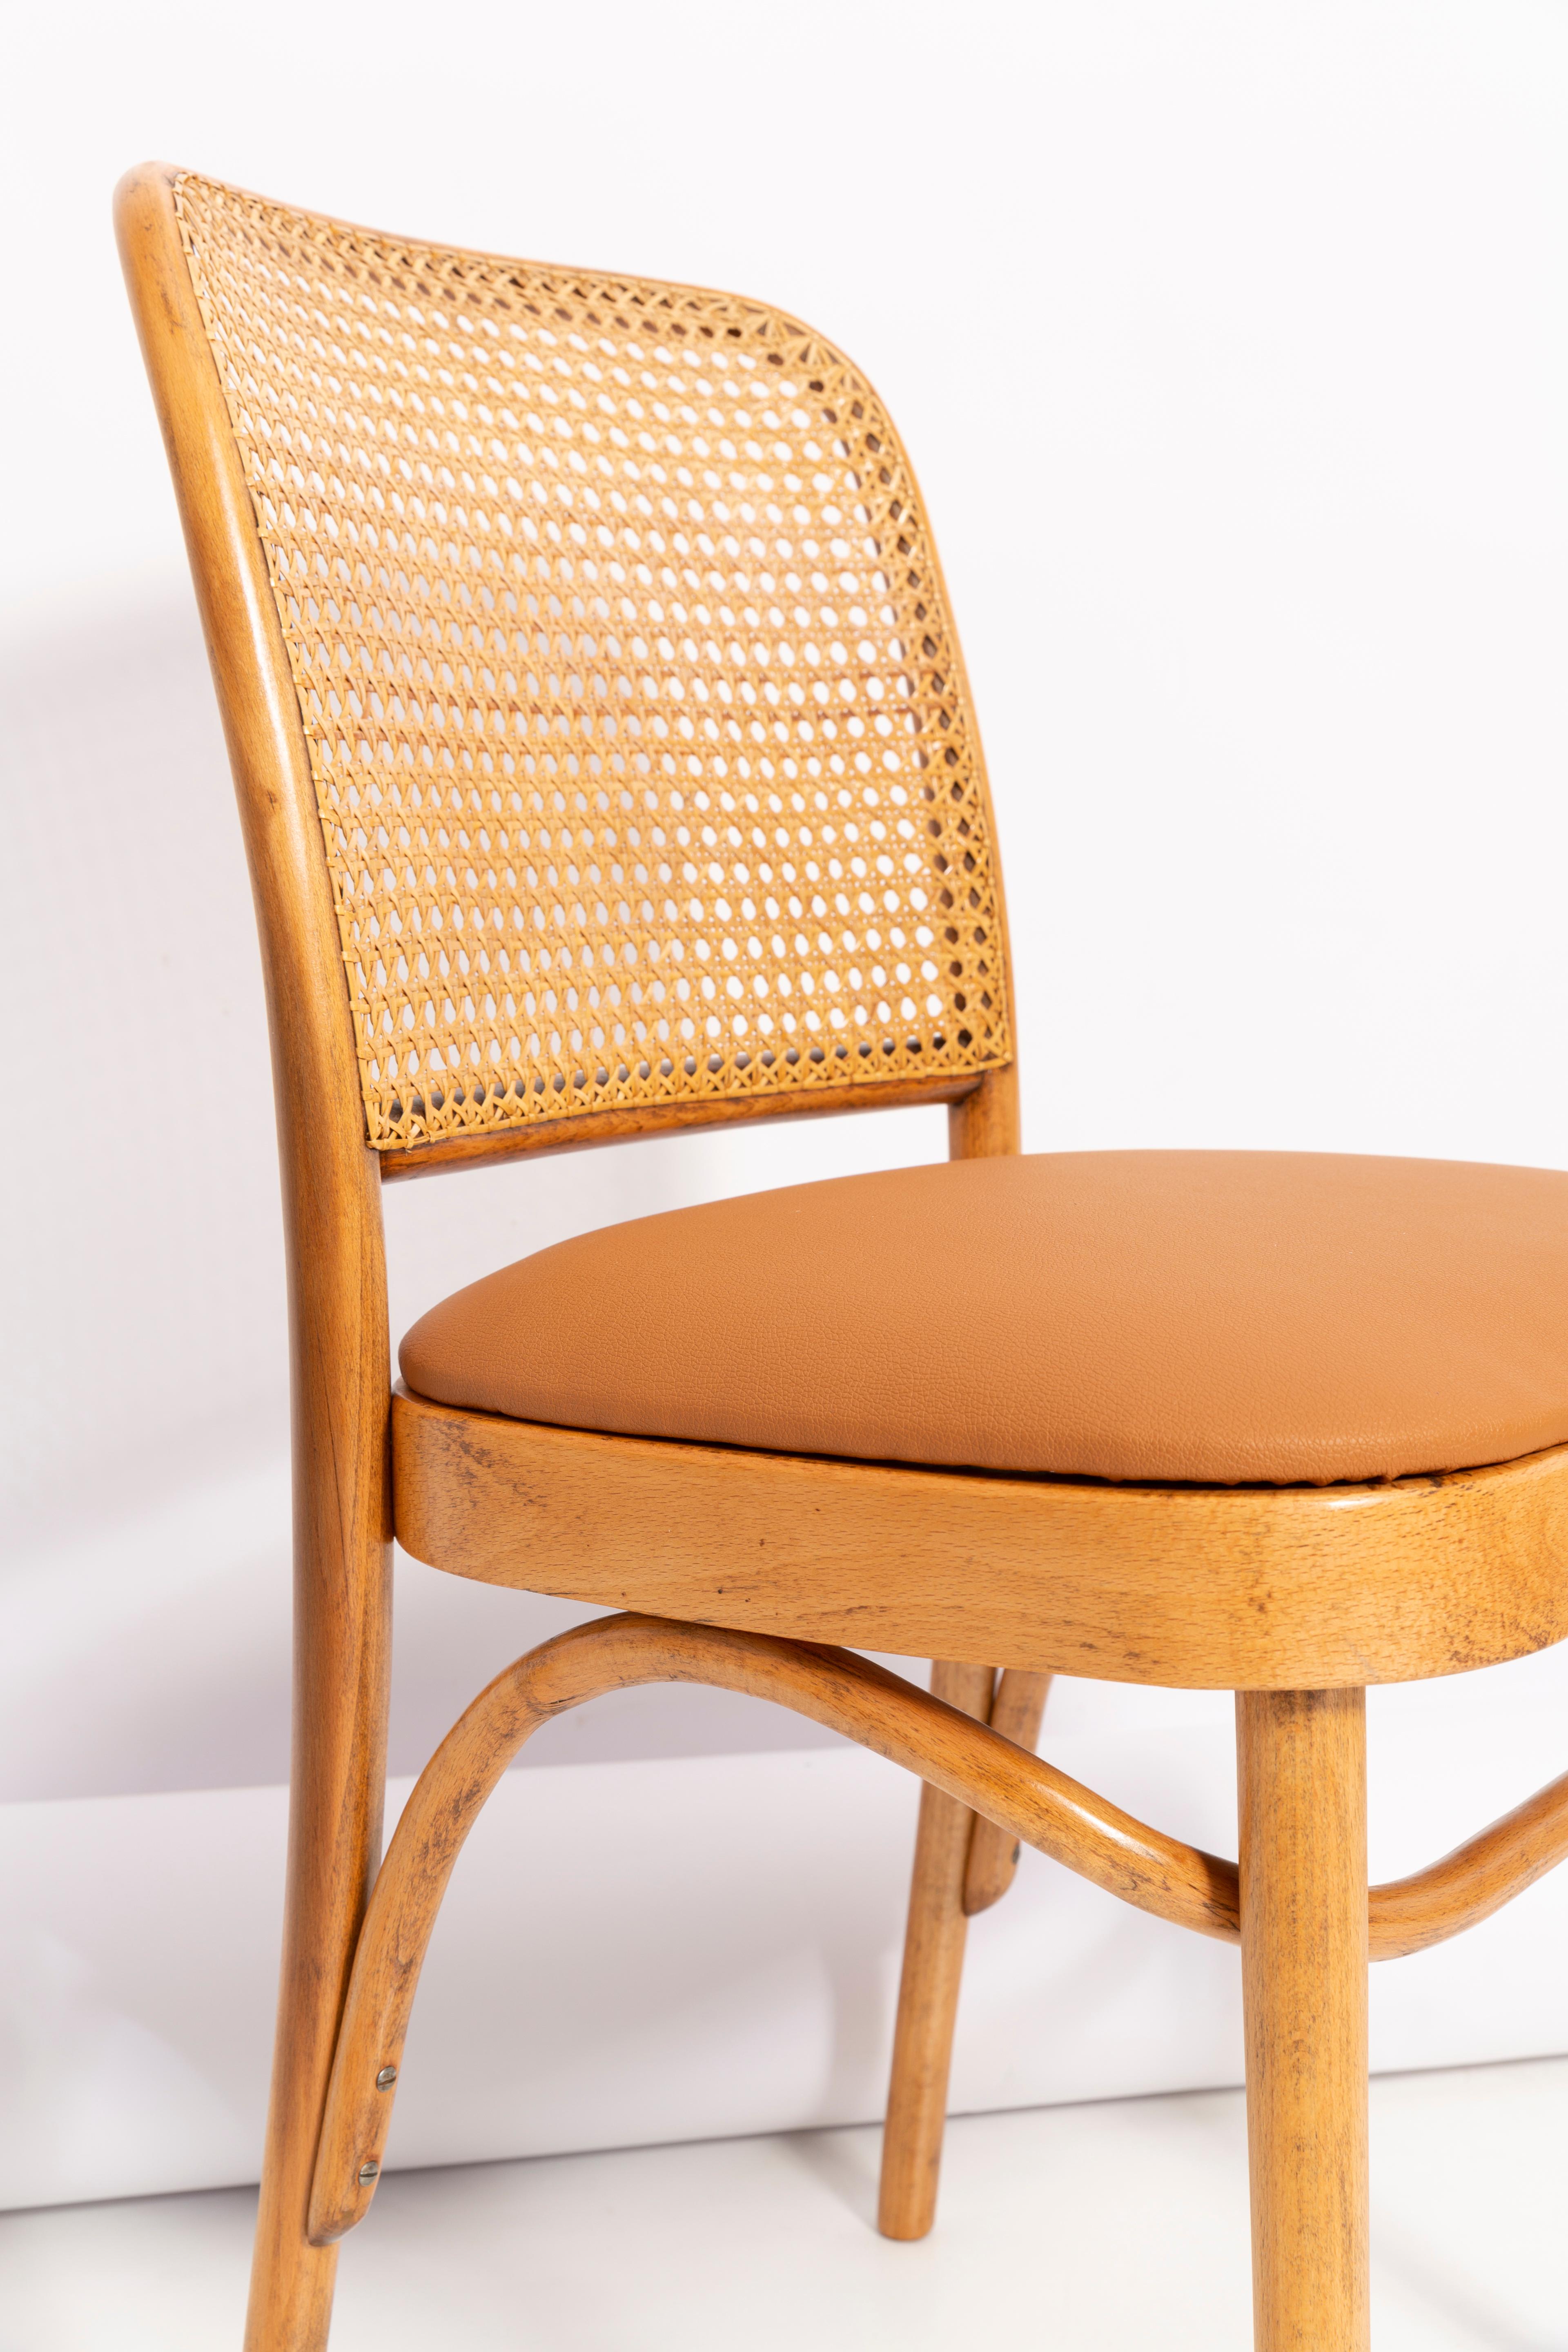 Schöner Stuhl aus Rattan, Kamellederimitat und Holz. Sie wurden in der Holzverarbeitungsfabrik Thonet hergestellt und von uns gründlich renoviert. Die Konstruktion ist aus Buchenholz mit Wasserbeize Eiche braun Farbe gefärbt gemacht. Die Stühle sind